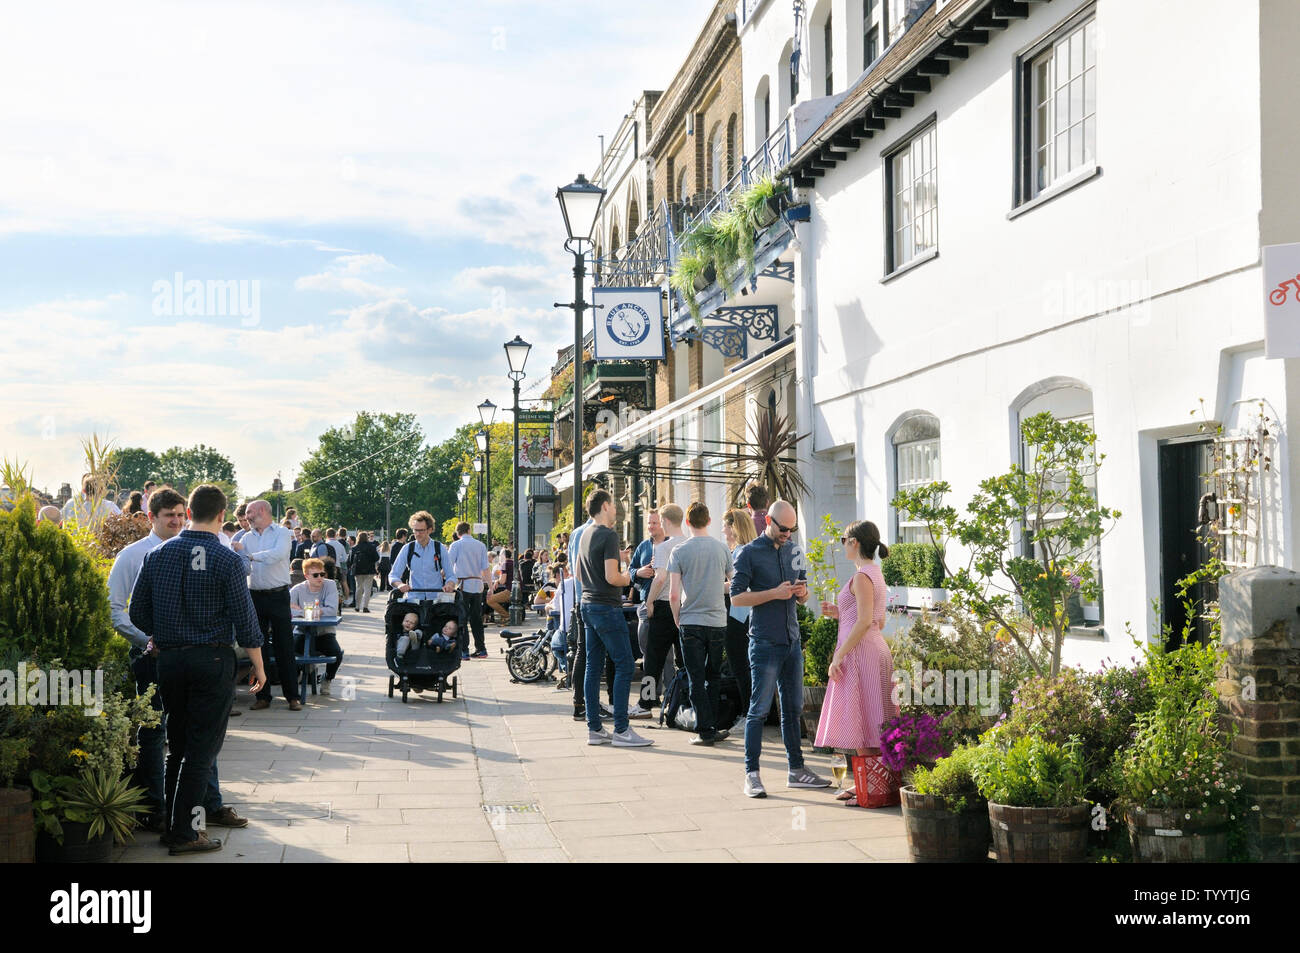 Les gens de prendre un verre au soleil en dehors de la Blue Anchor et le Rutland Arms riverside pubs sur Lower Mall, Hammersmith, London W6, England, UK Banque D'Images